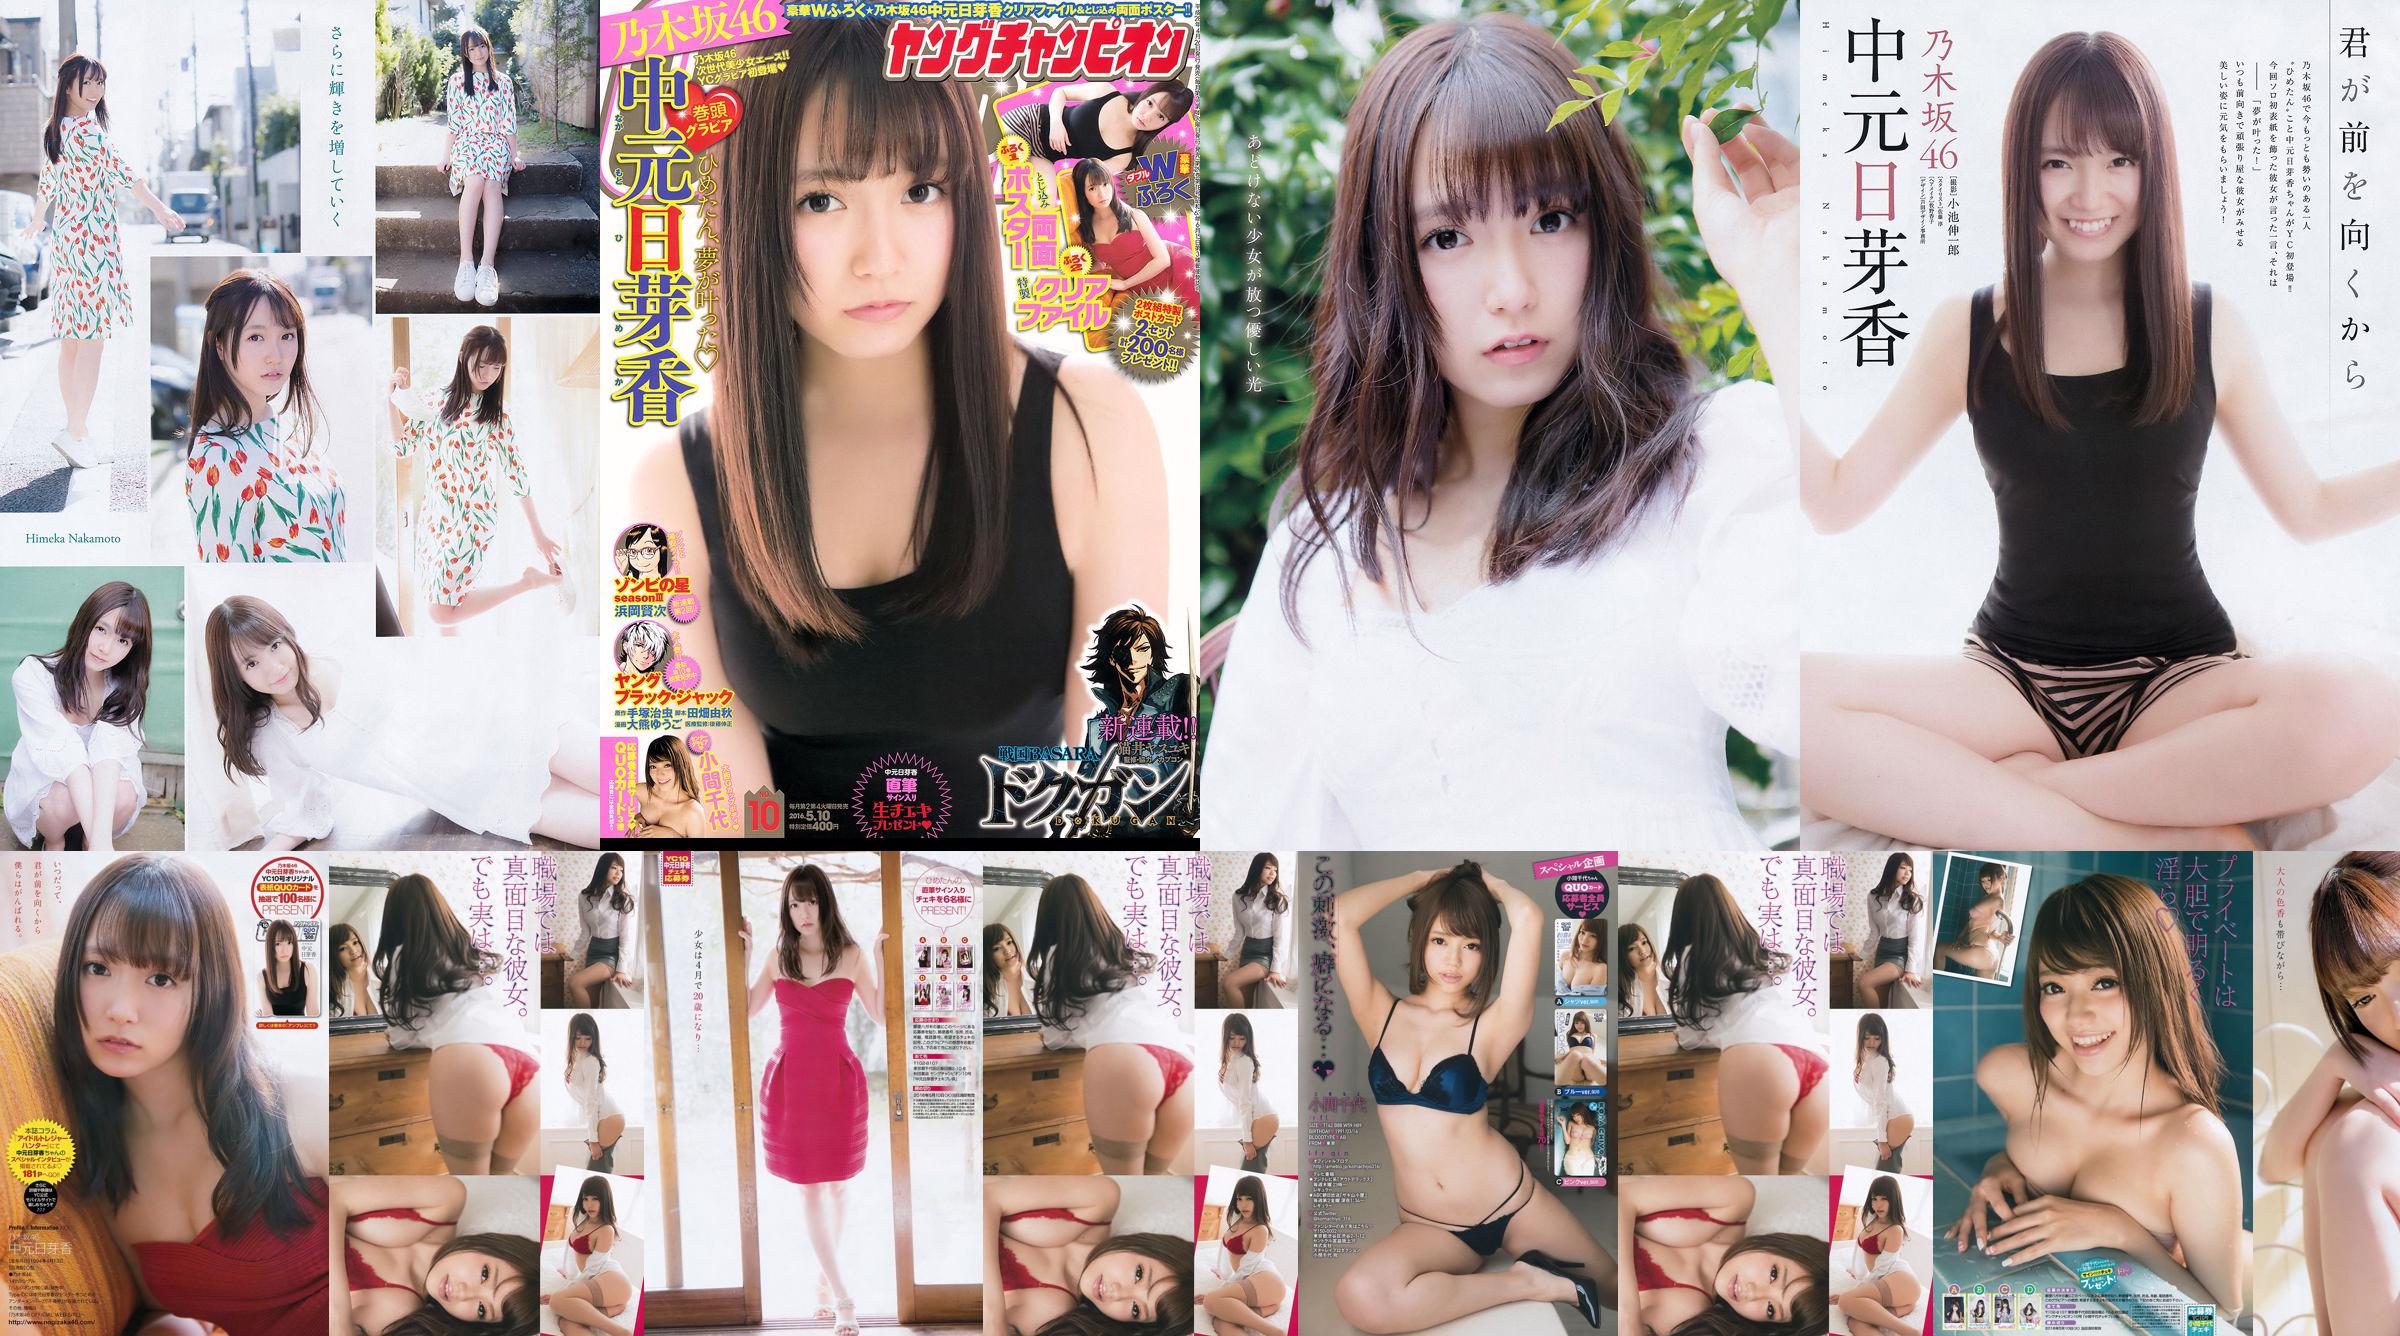 [Joven Campeona] Nakamoto Nichiko Koma Chiyo 2016 No.10 Photo Magazine No.9a6aa6 Página 1